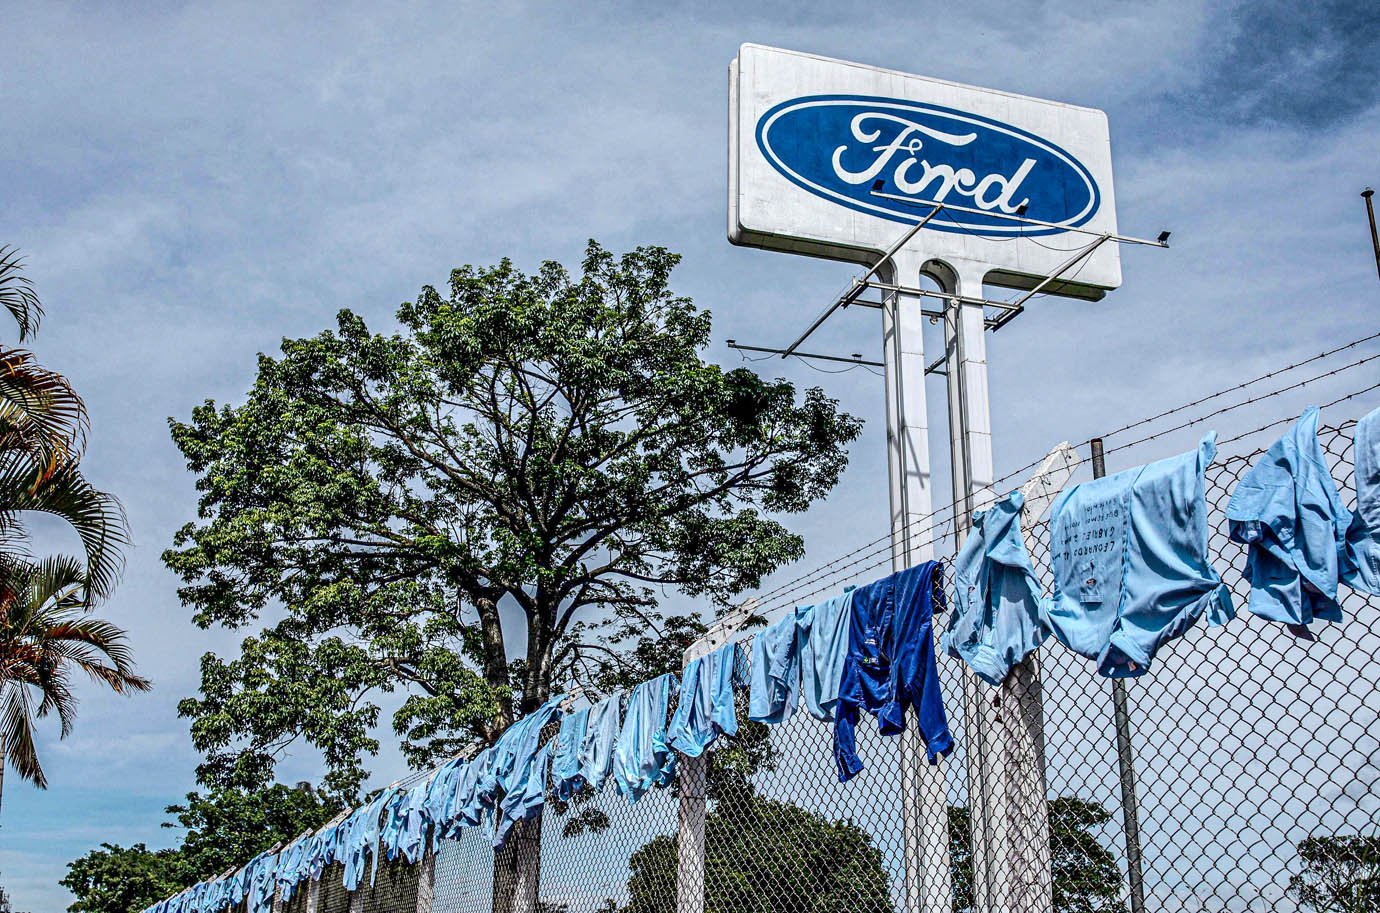 Uniformes estão pendurados do lado de fora de uma fábrica da Ford Motor Co, onde trabalhadores protestam depois que a empresa anunciou que fechará suas três fábricas no país, em Taubaté, Brasil, em 18 de janeiro de 2021. REUTERS / Roosevelt Cassio